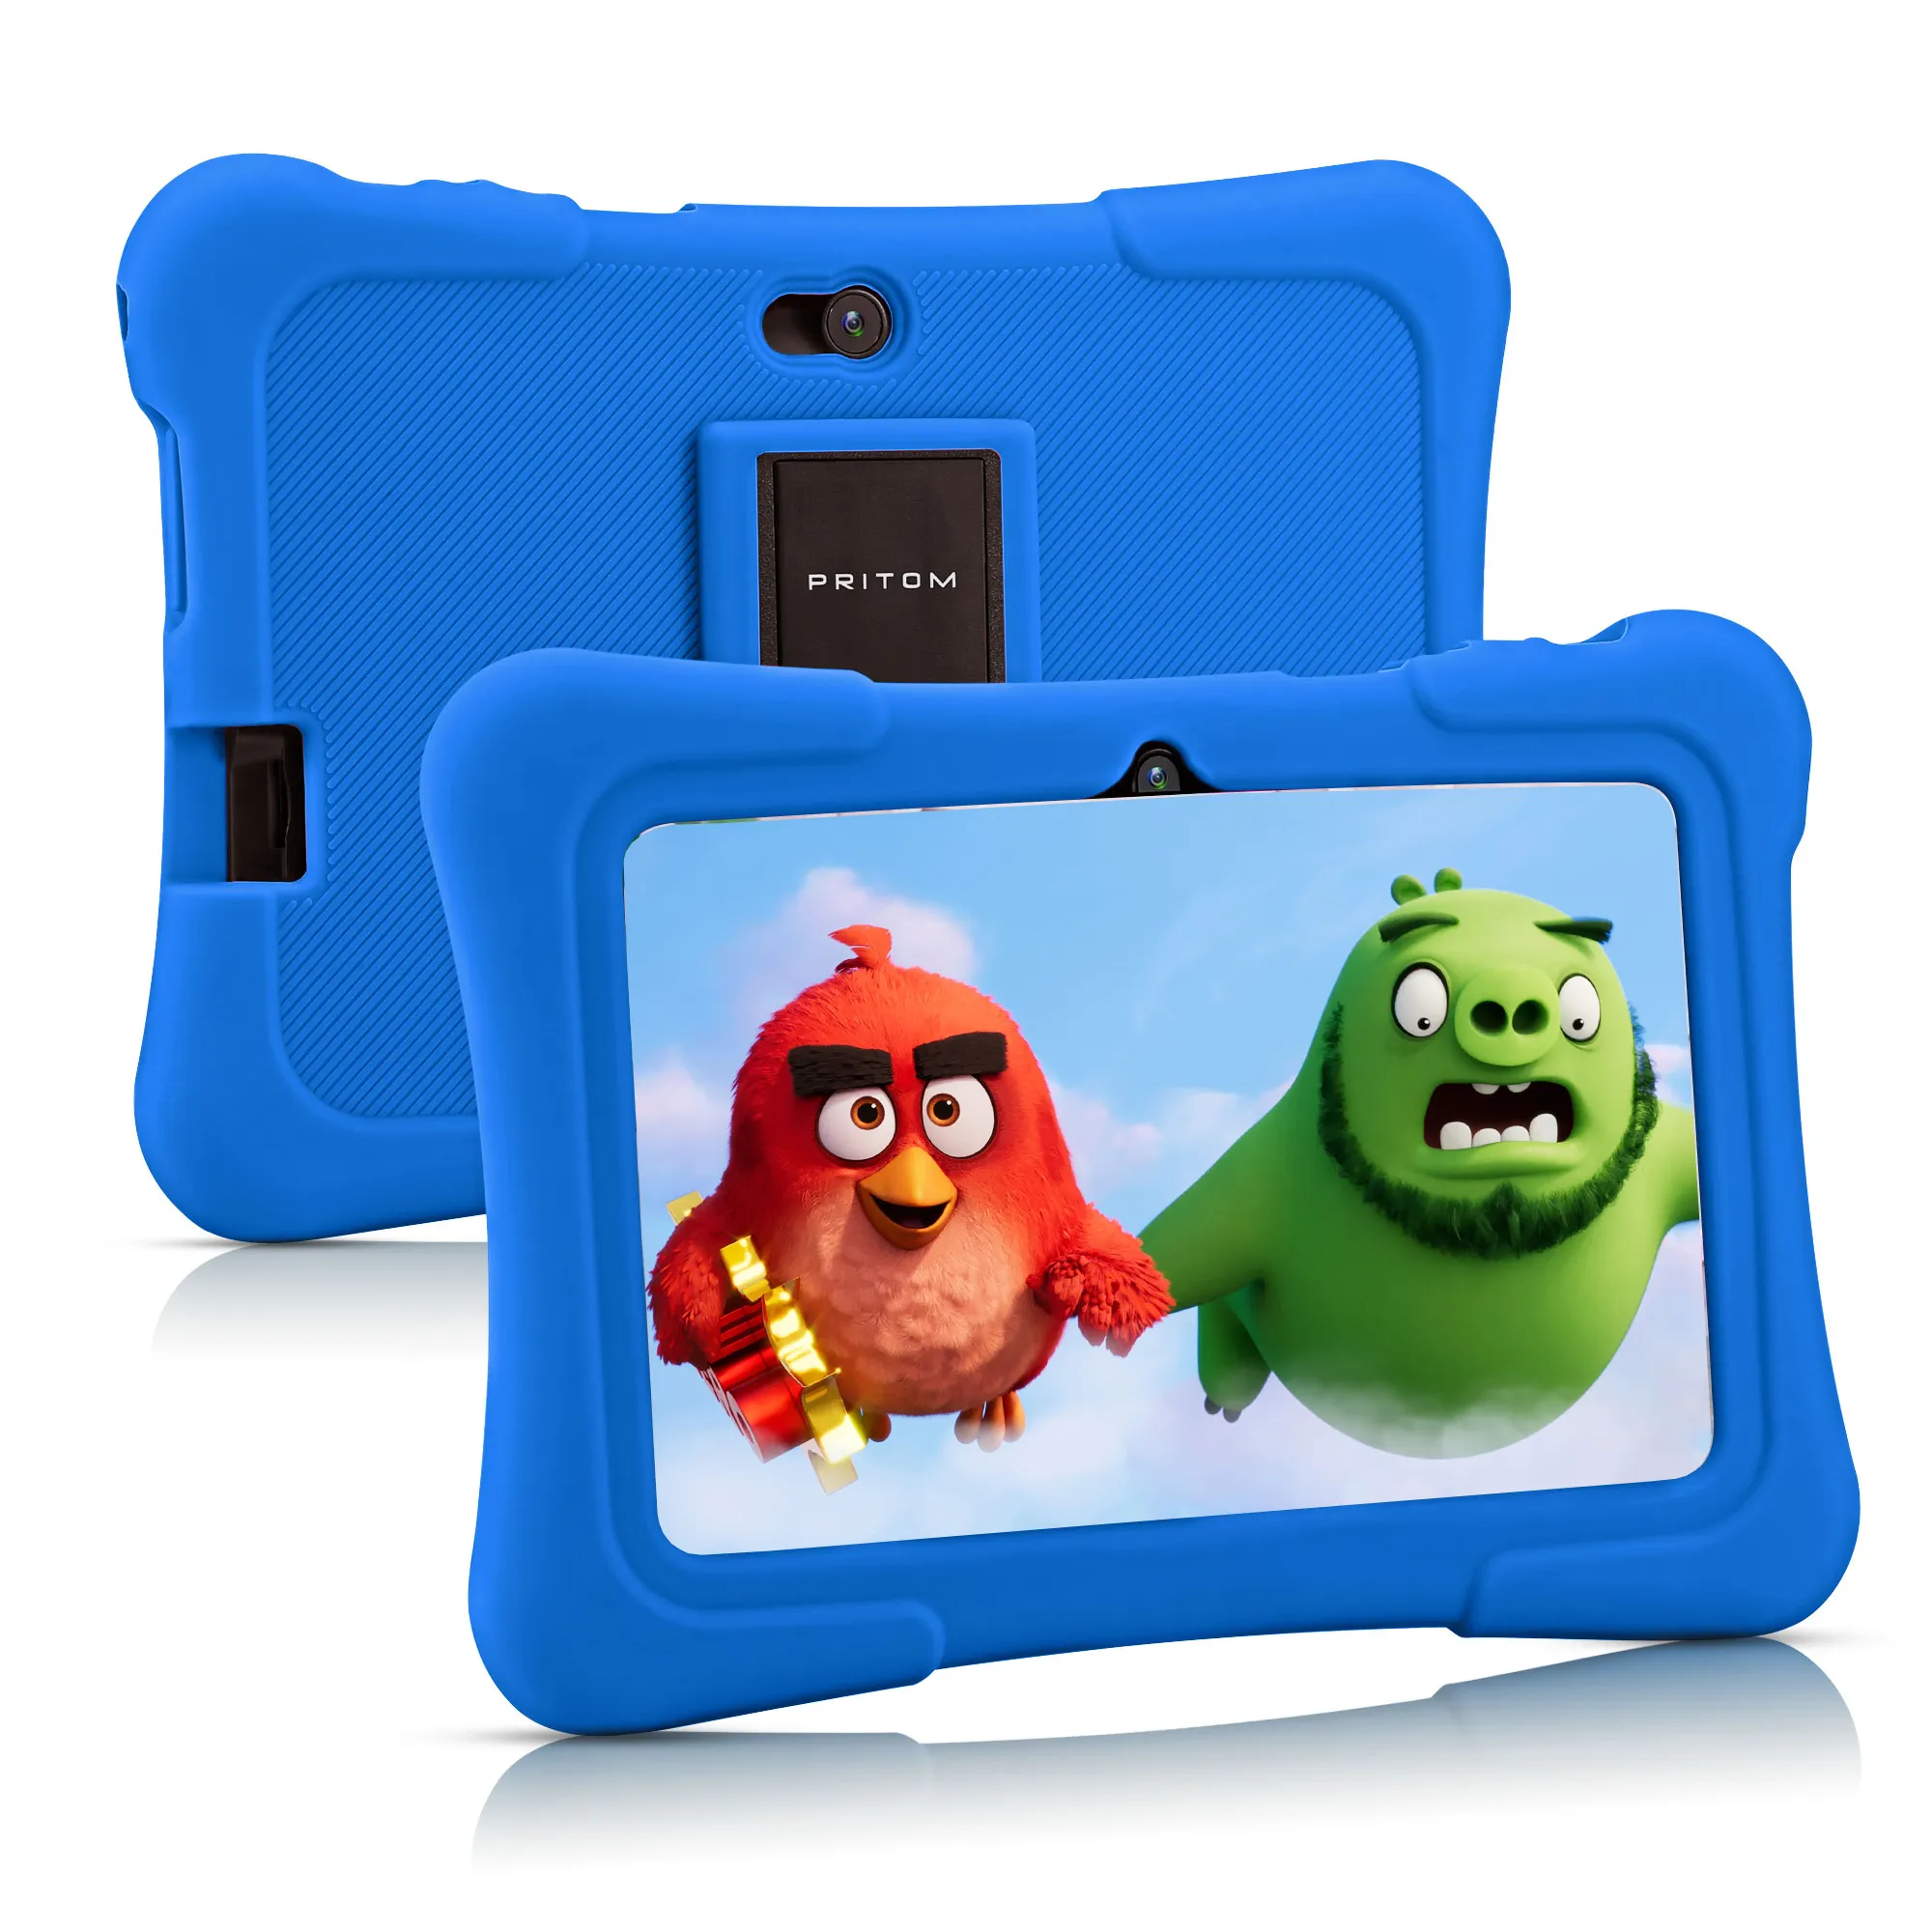 PRITOM K7 1GB RAM 16GB ROM Wifi Kids Tablet PC 1024 * 600HD Bildschirm mit Bildungs software MINI Children Tablet PC